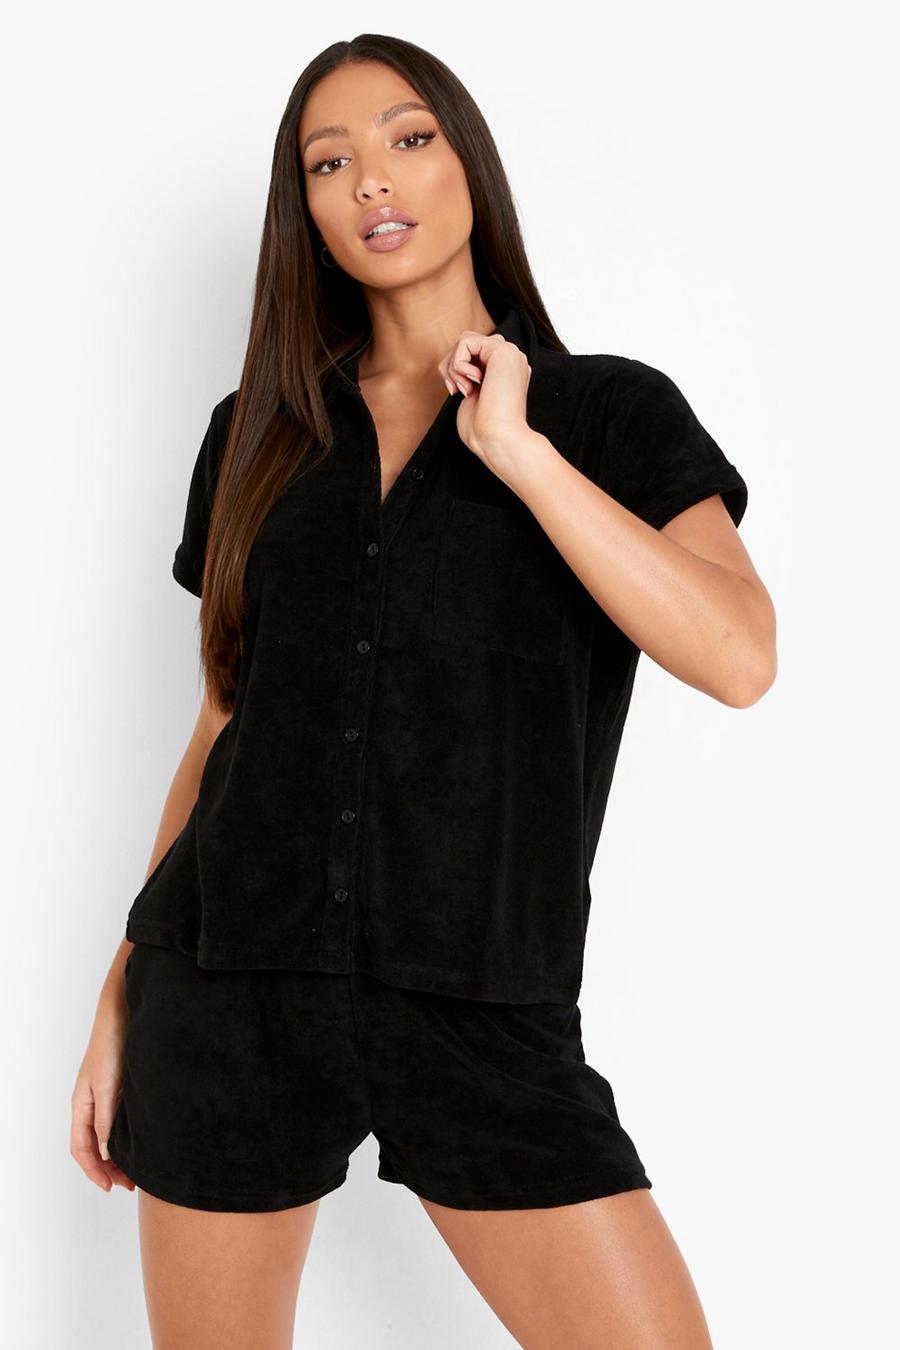 שחור negro סט של חולצה ושורט מבד מגבת עבה לנשים גבוהות